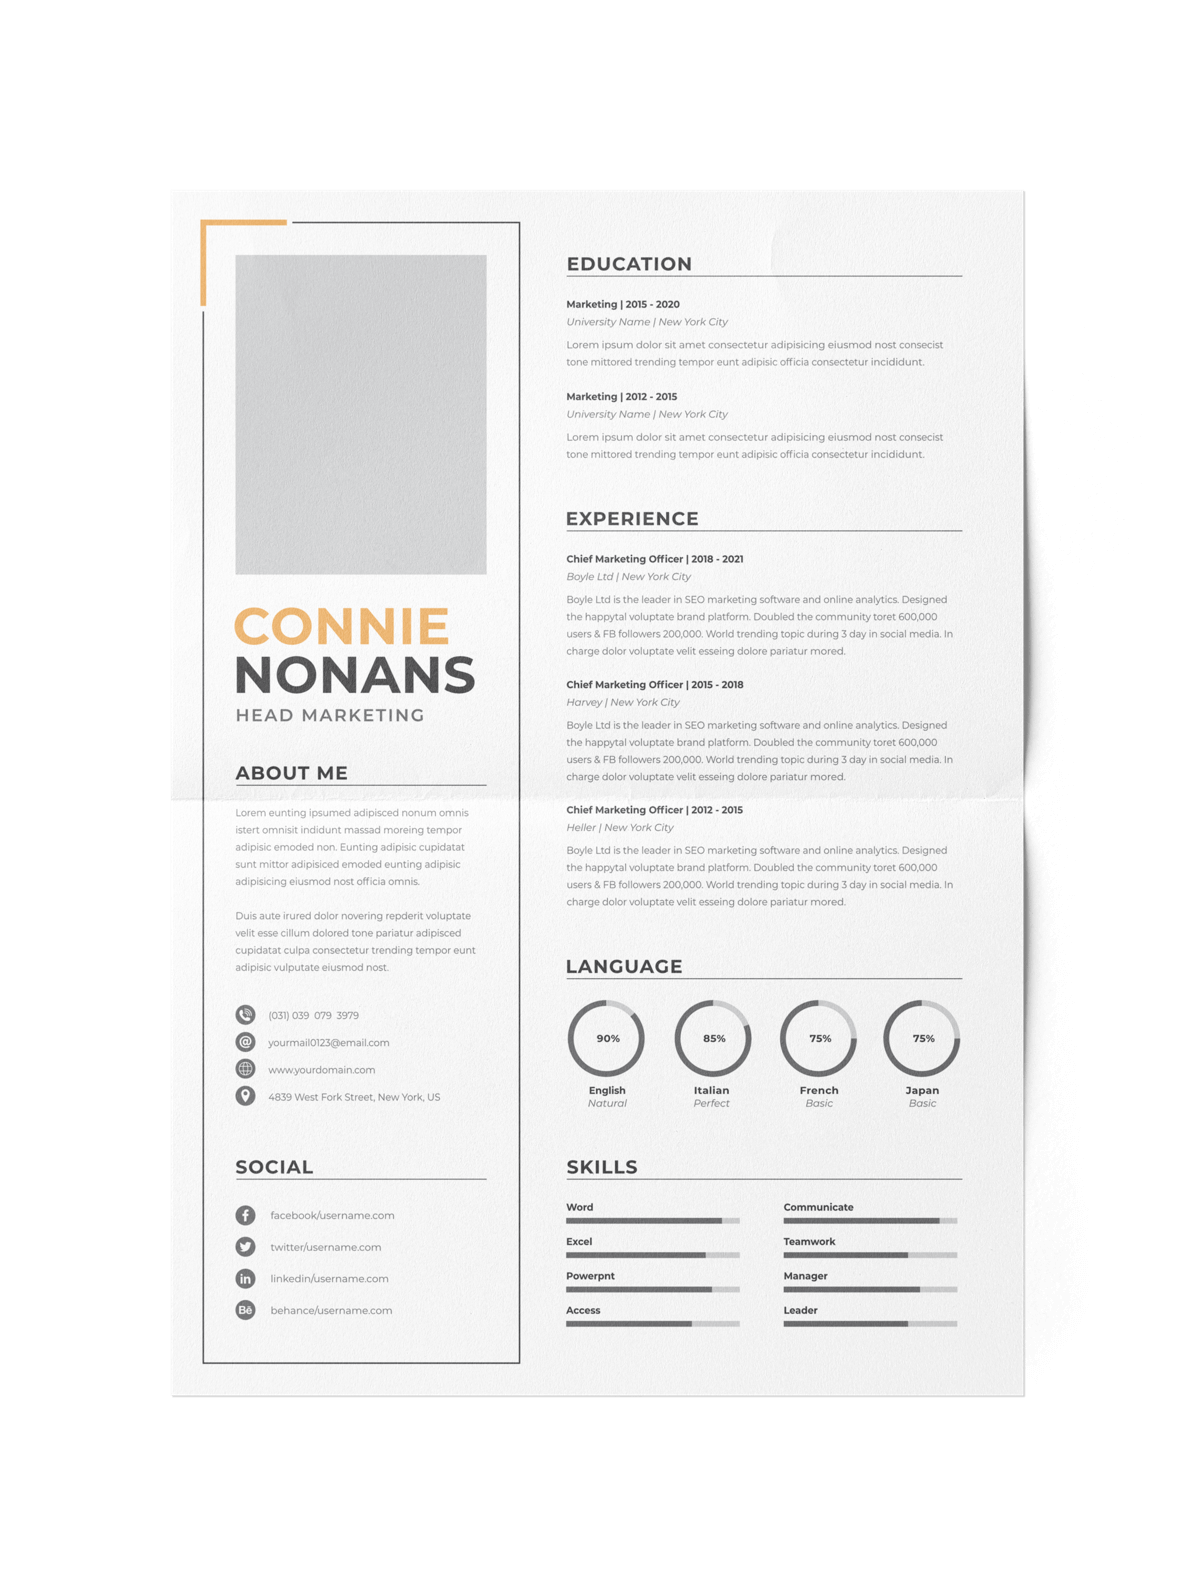 CV #132 Connie Nonans